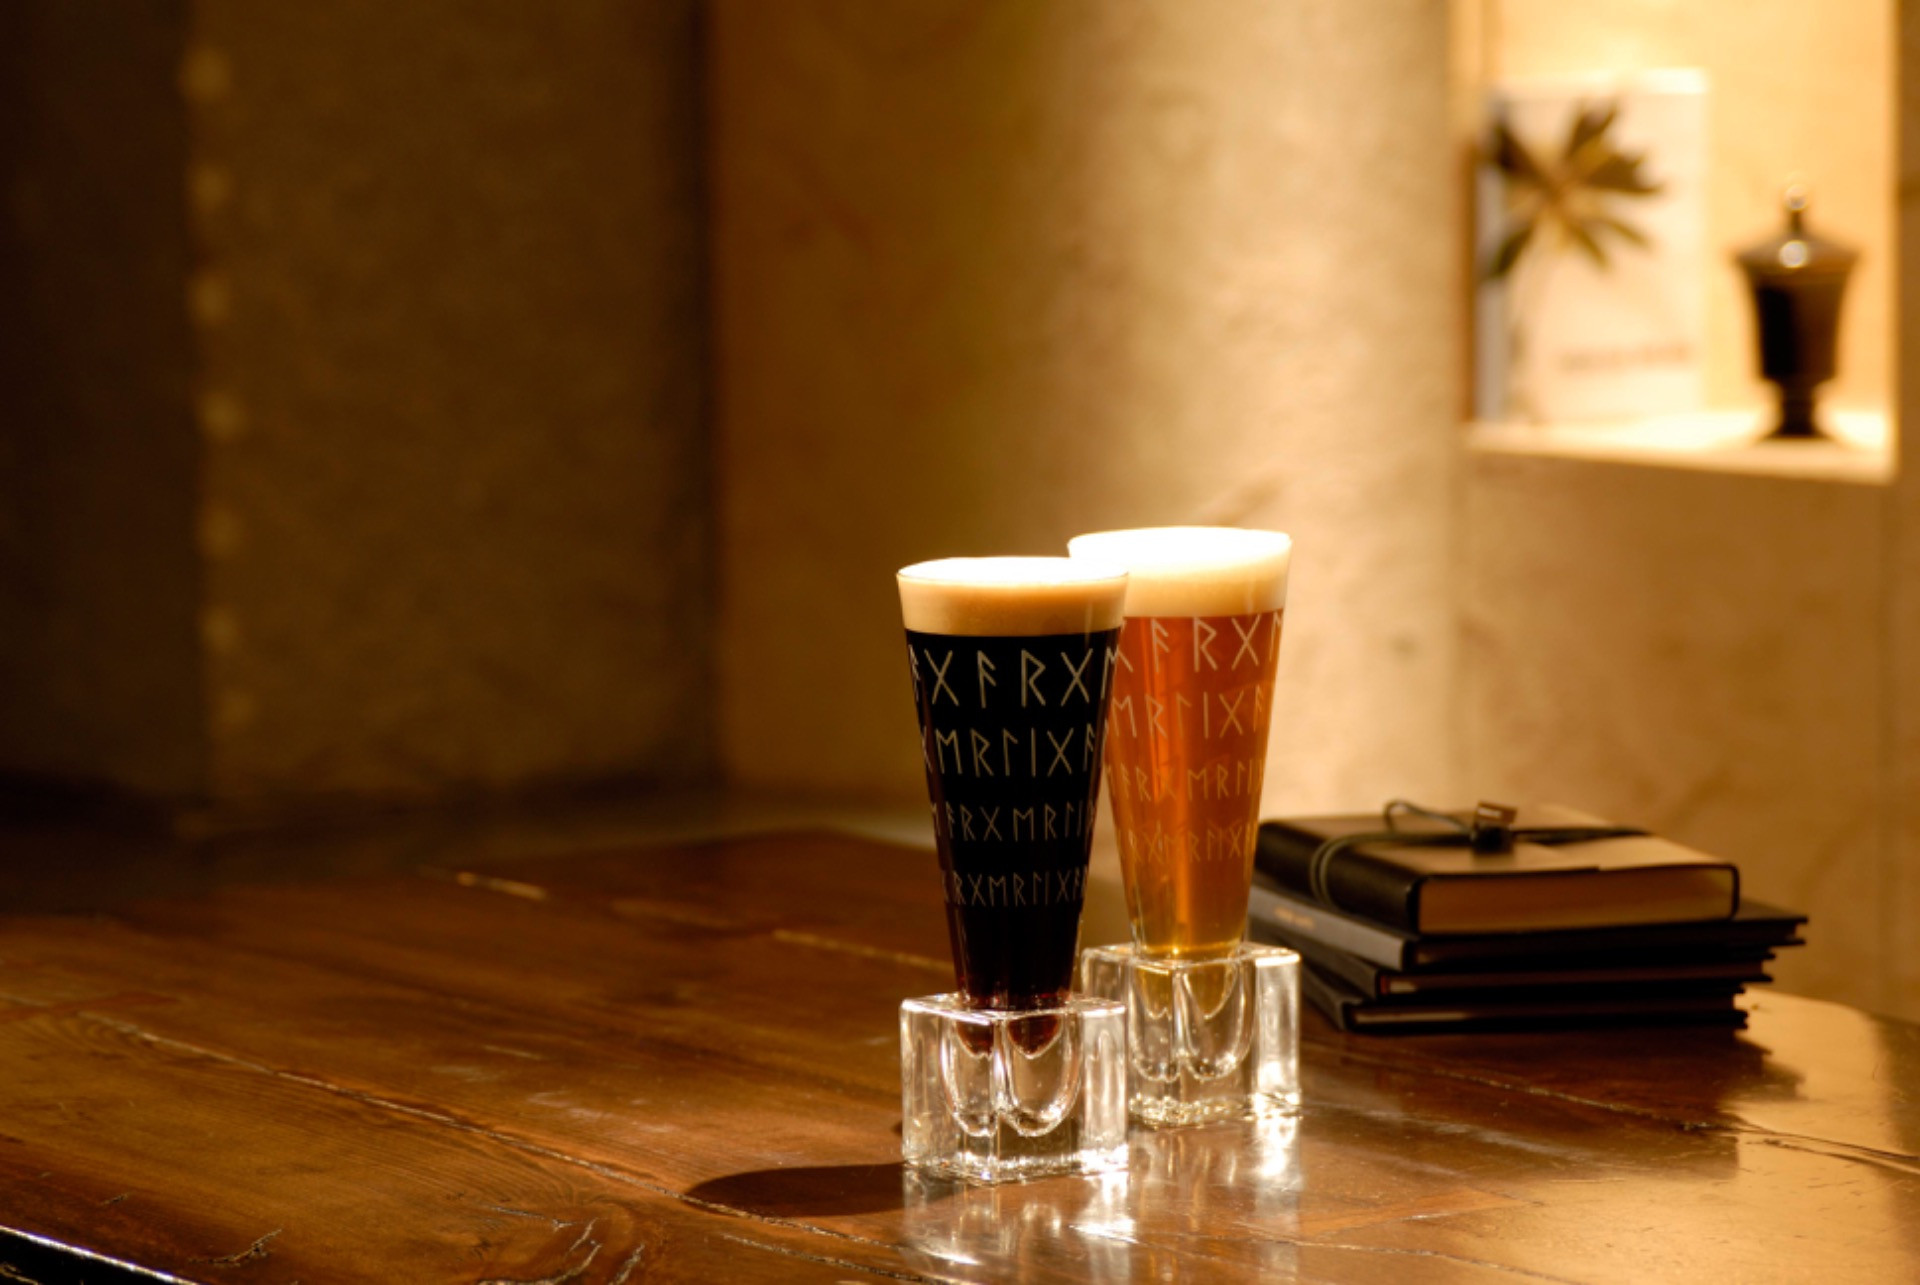 ガージェリーとアジール 荻窪のビアバーアジールは飲食店限定販売ガージェリービール全種類を常備している日本で数少ないお店です 荻窪のビアバーからブログを配信しておりますのでぜひご覧ください